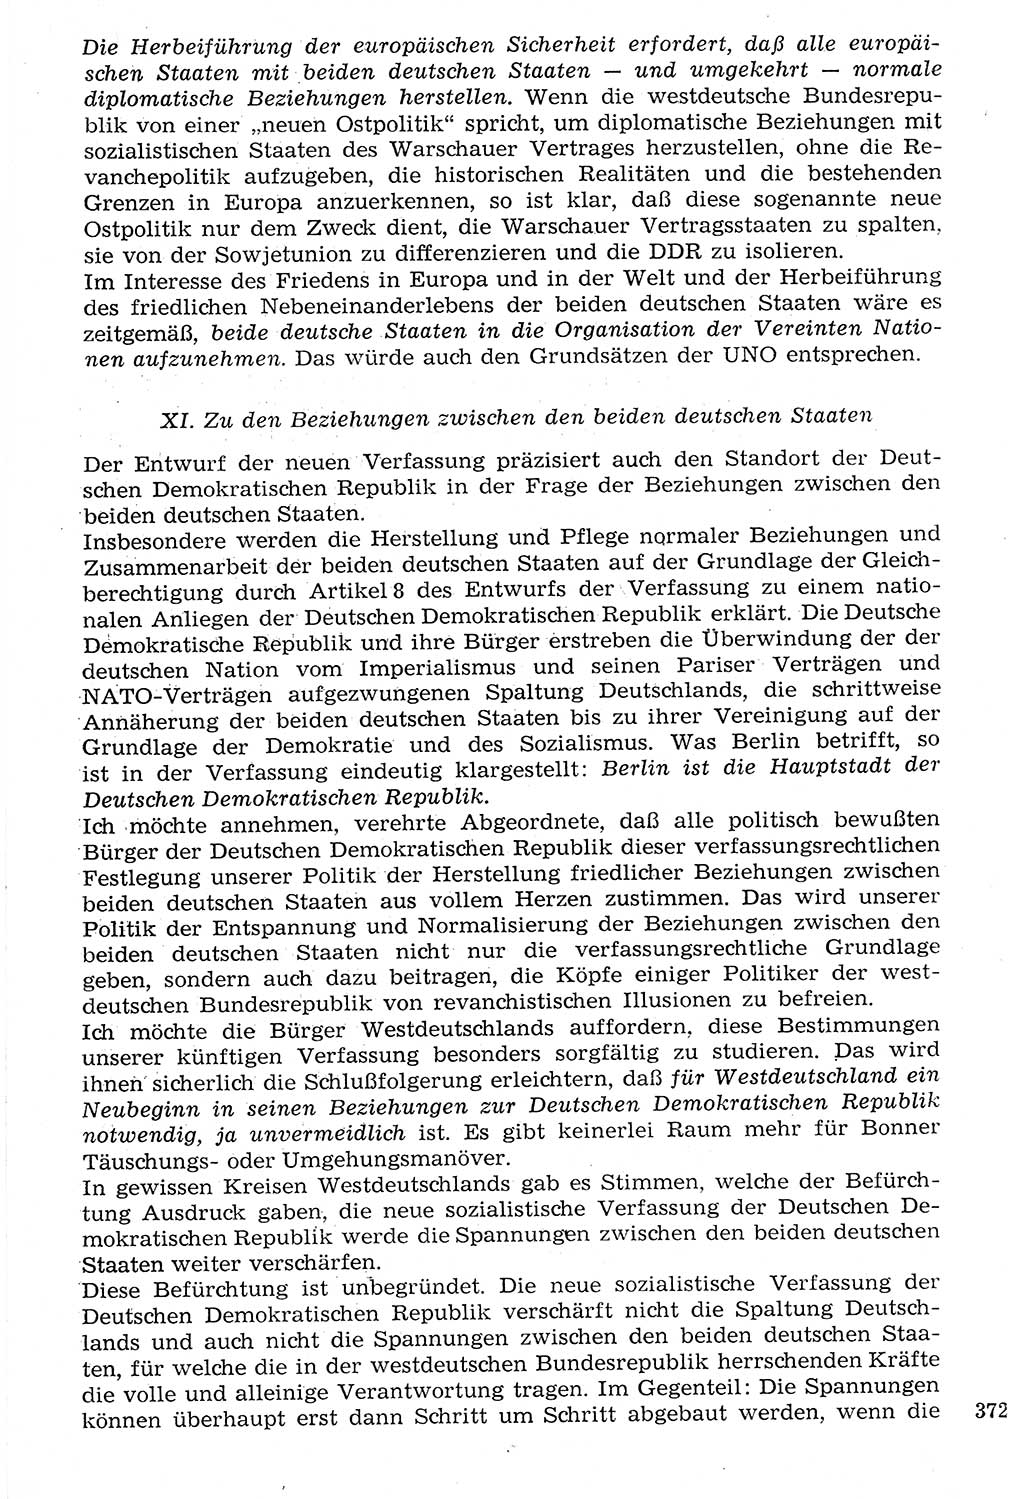 Staat und Recht (StuR), 17. Jahrgang [Deutsche Demokratische Republik (DDR)] 1968, Seite 372 (StuR DDR 1968, S. 372)